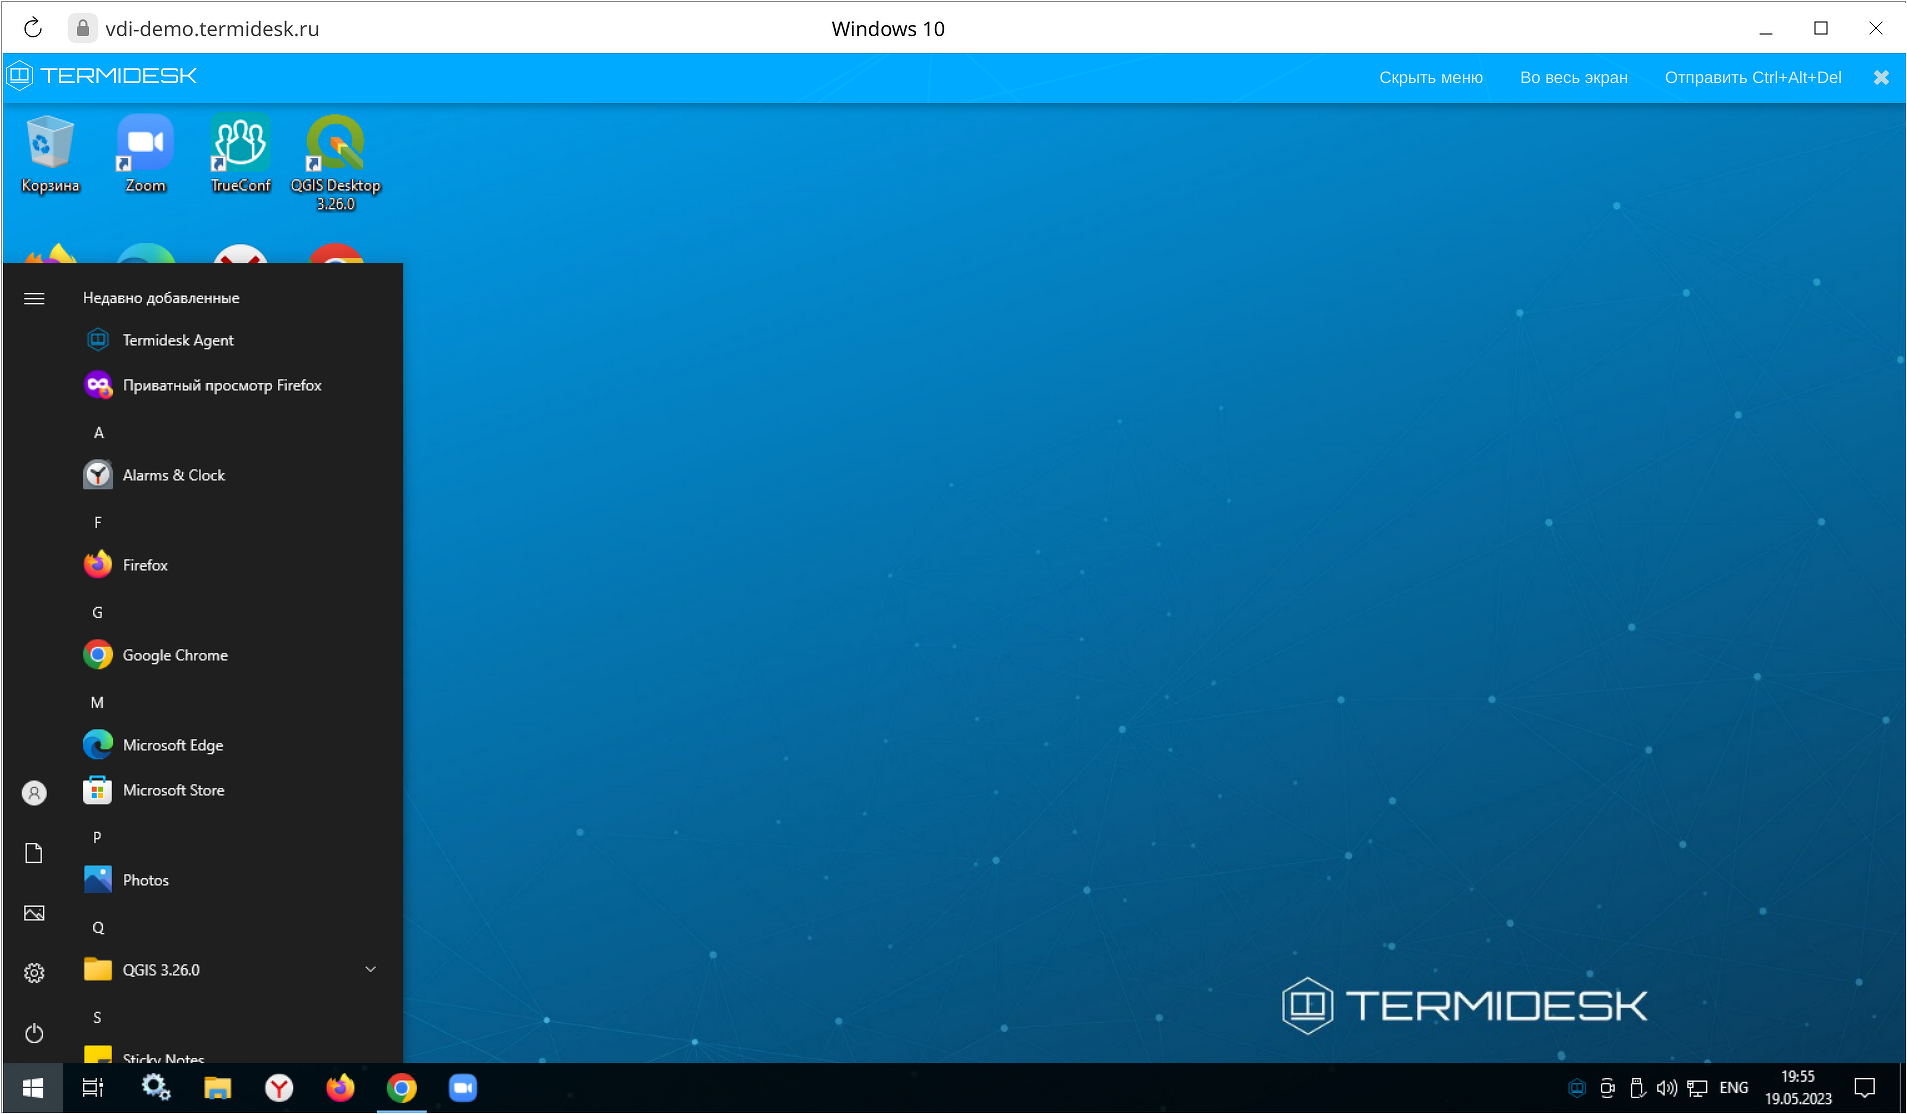 Terminal Termidesk: новый продукт для терминальных сервисов на основе Astra Linux и Windows